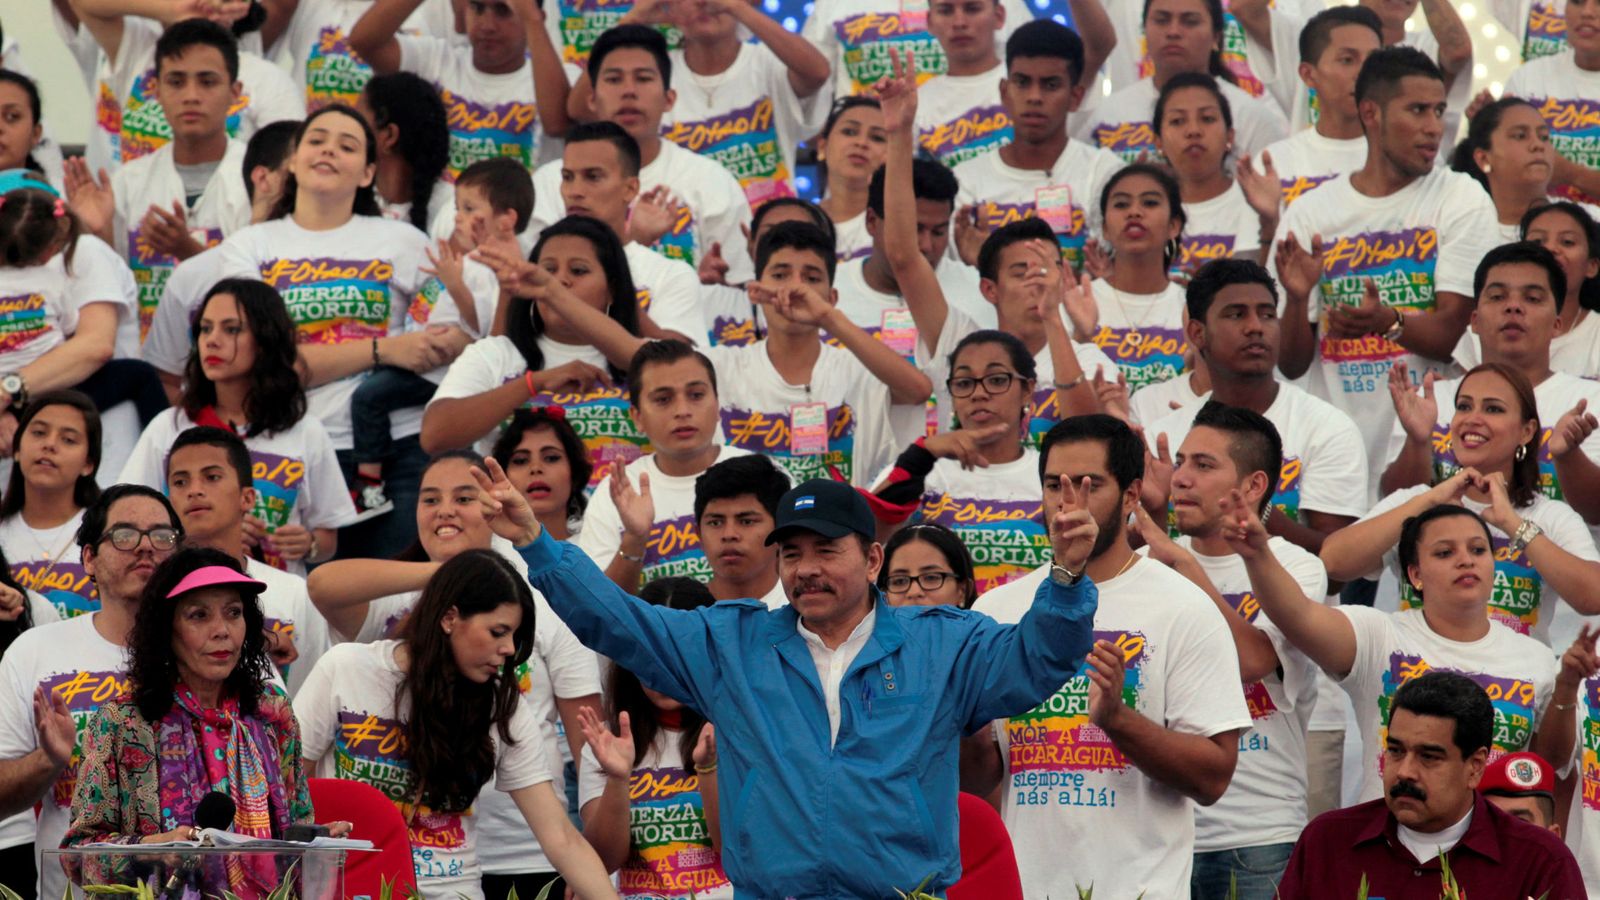 Foto: El presidente Daniel Ortega saluda a sus partidarios durante el 37º aniversario de la Revolución Sandinista en Managua, el 19 de julio de 2016 (Reuters)